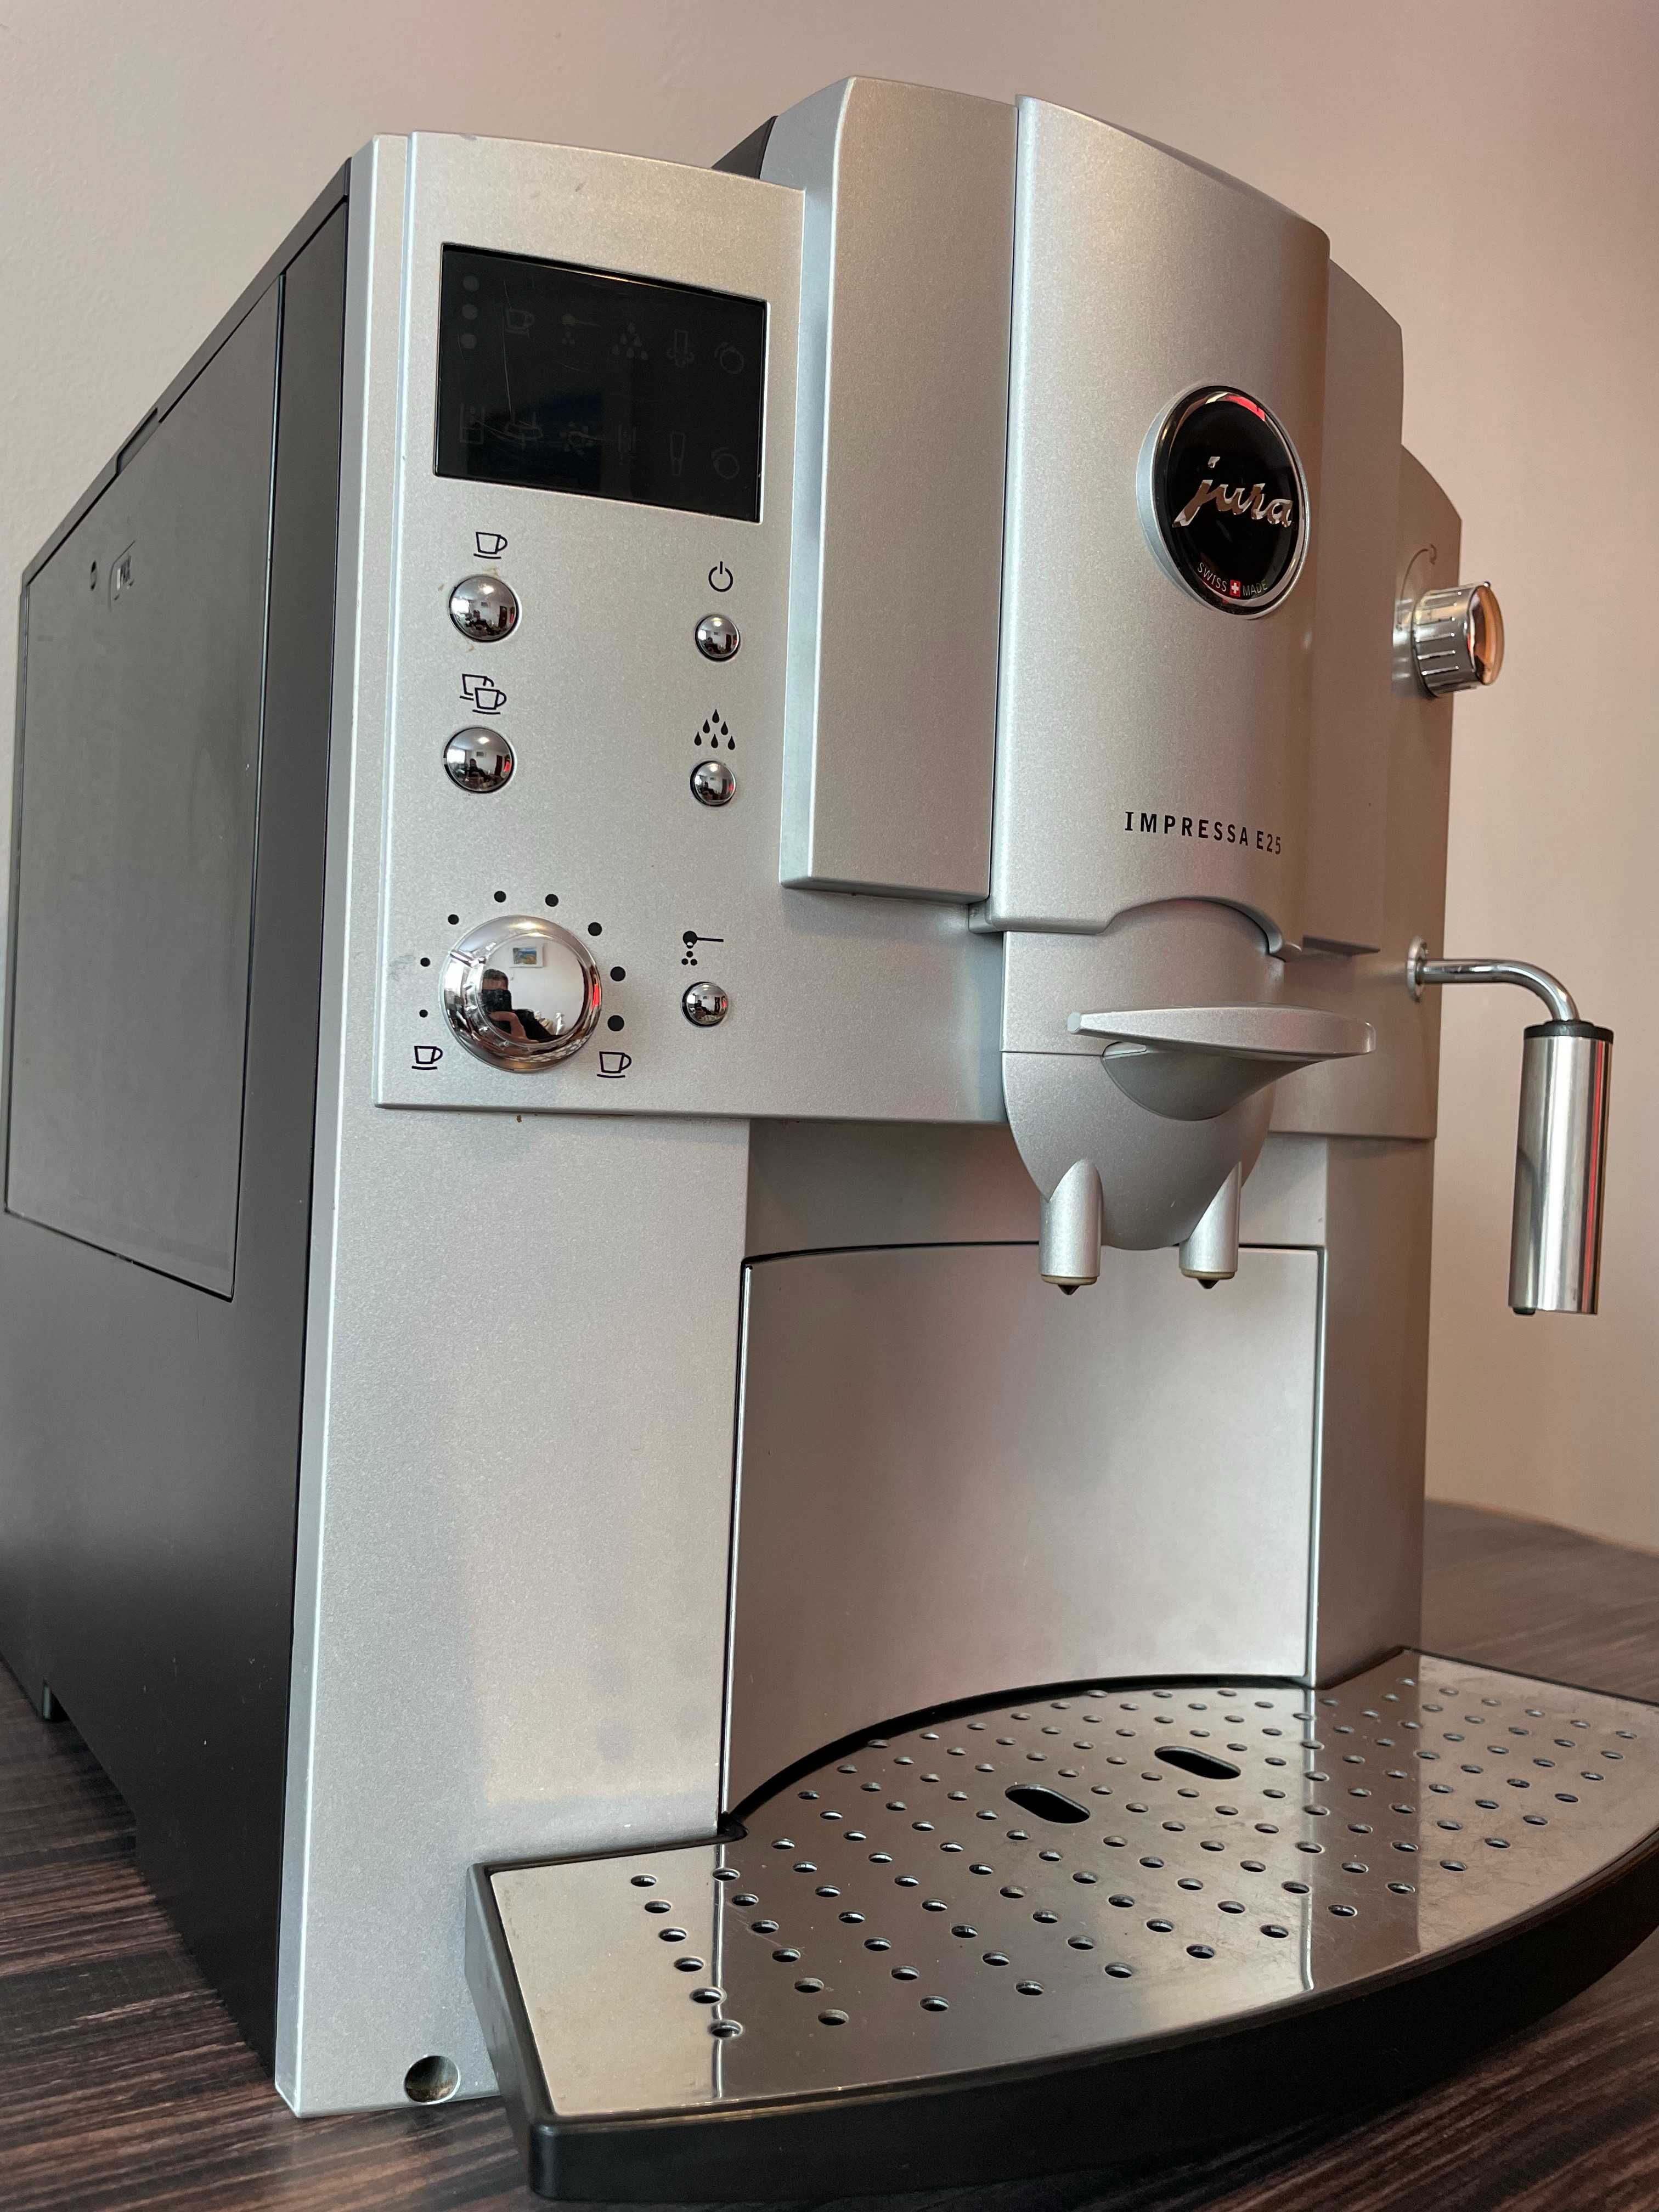 Espressor Automat Cafea - Jura Impressa E25, elvetian, spumare lapte